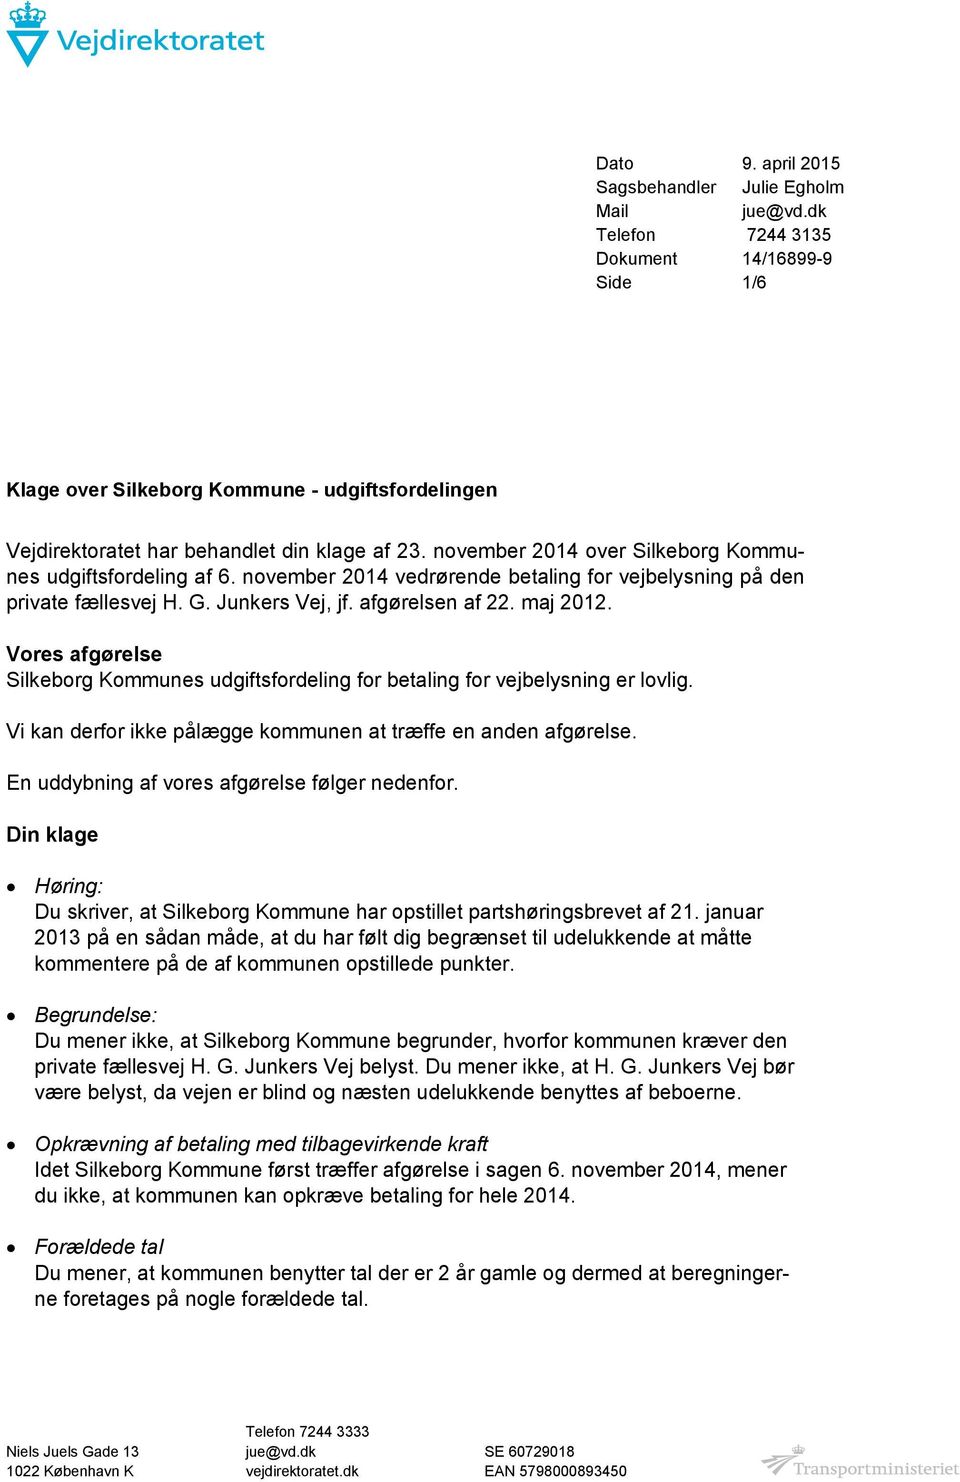 november 2014 over Silkeborg Kommunes udgiftsfordeling af 6. november 2014 vedrørende betaling for vejbelysning på den private fællesvej H. G. Junkers Vej, jf. afgørelsen af 22. maj 2012.